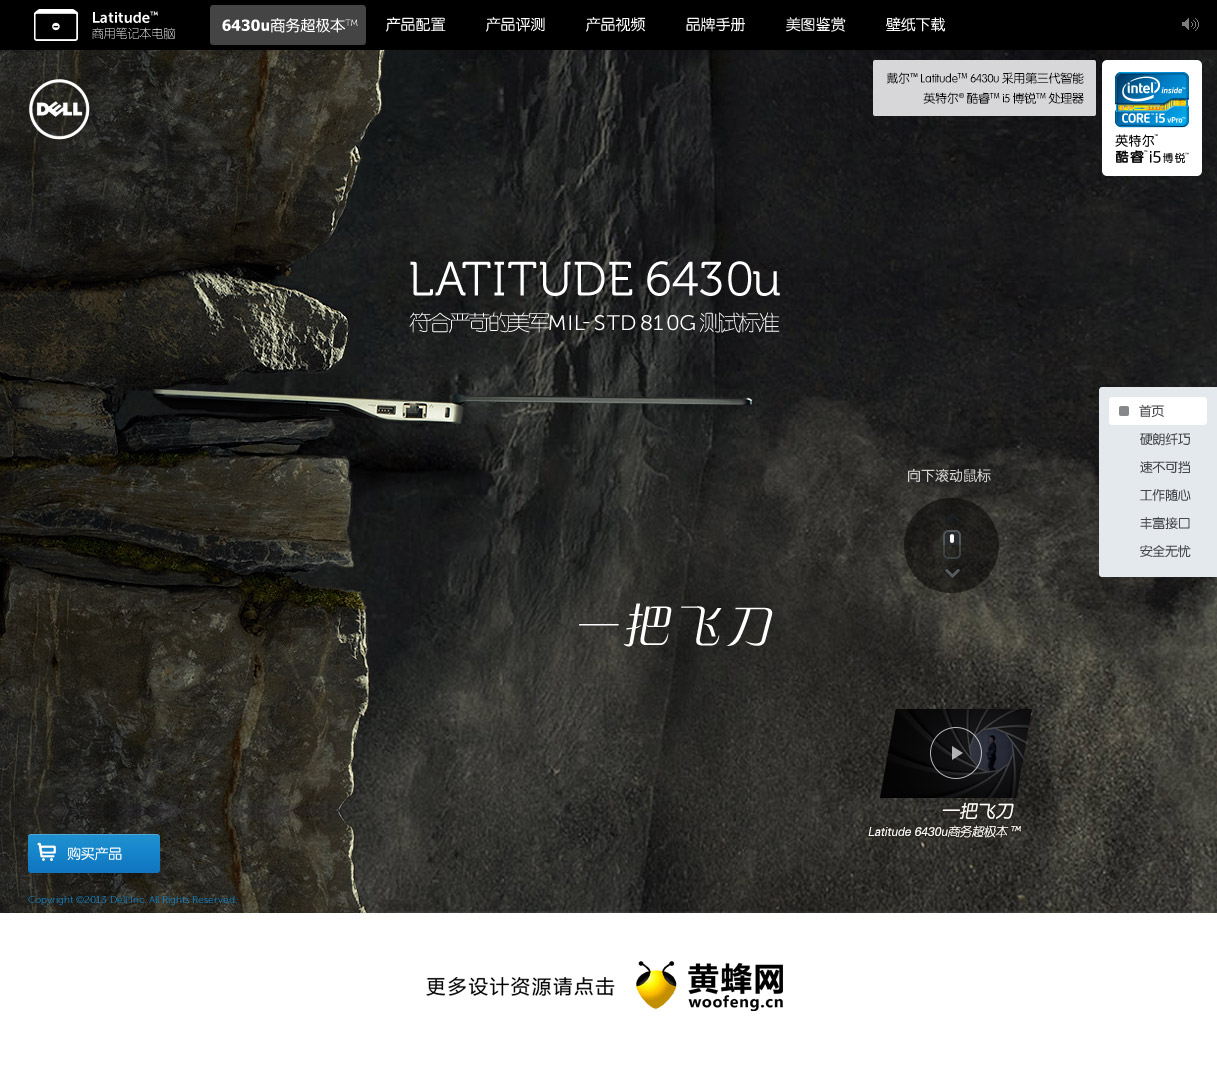 戴尔Latitude商用笔记本系列 6430U系列产品网站，来源自黄蜂网https://woofeng.cn/web/